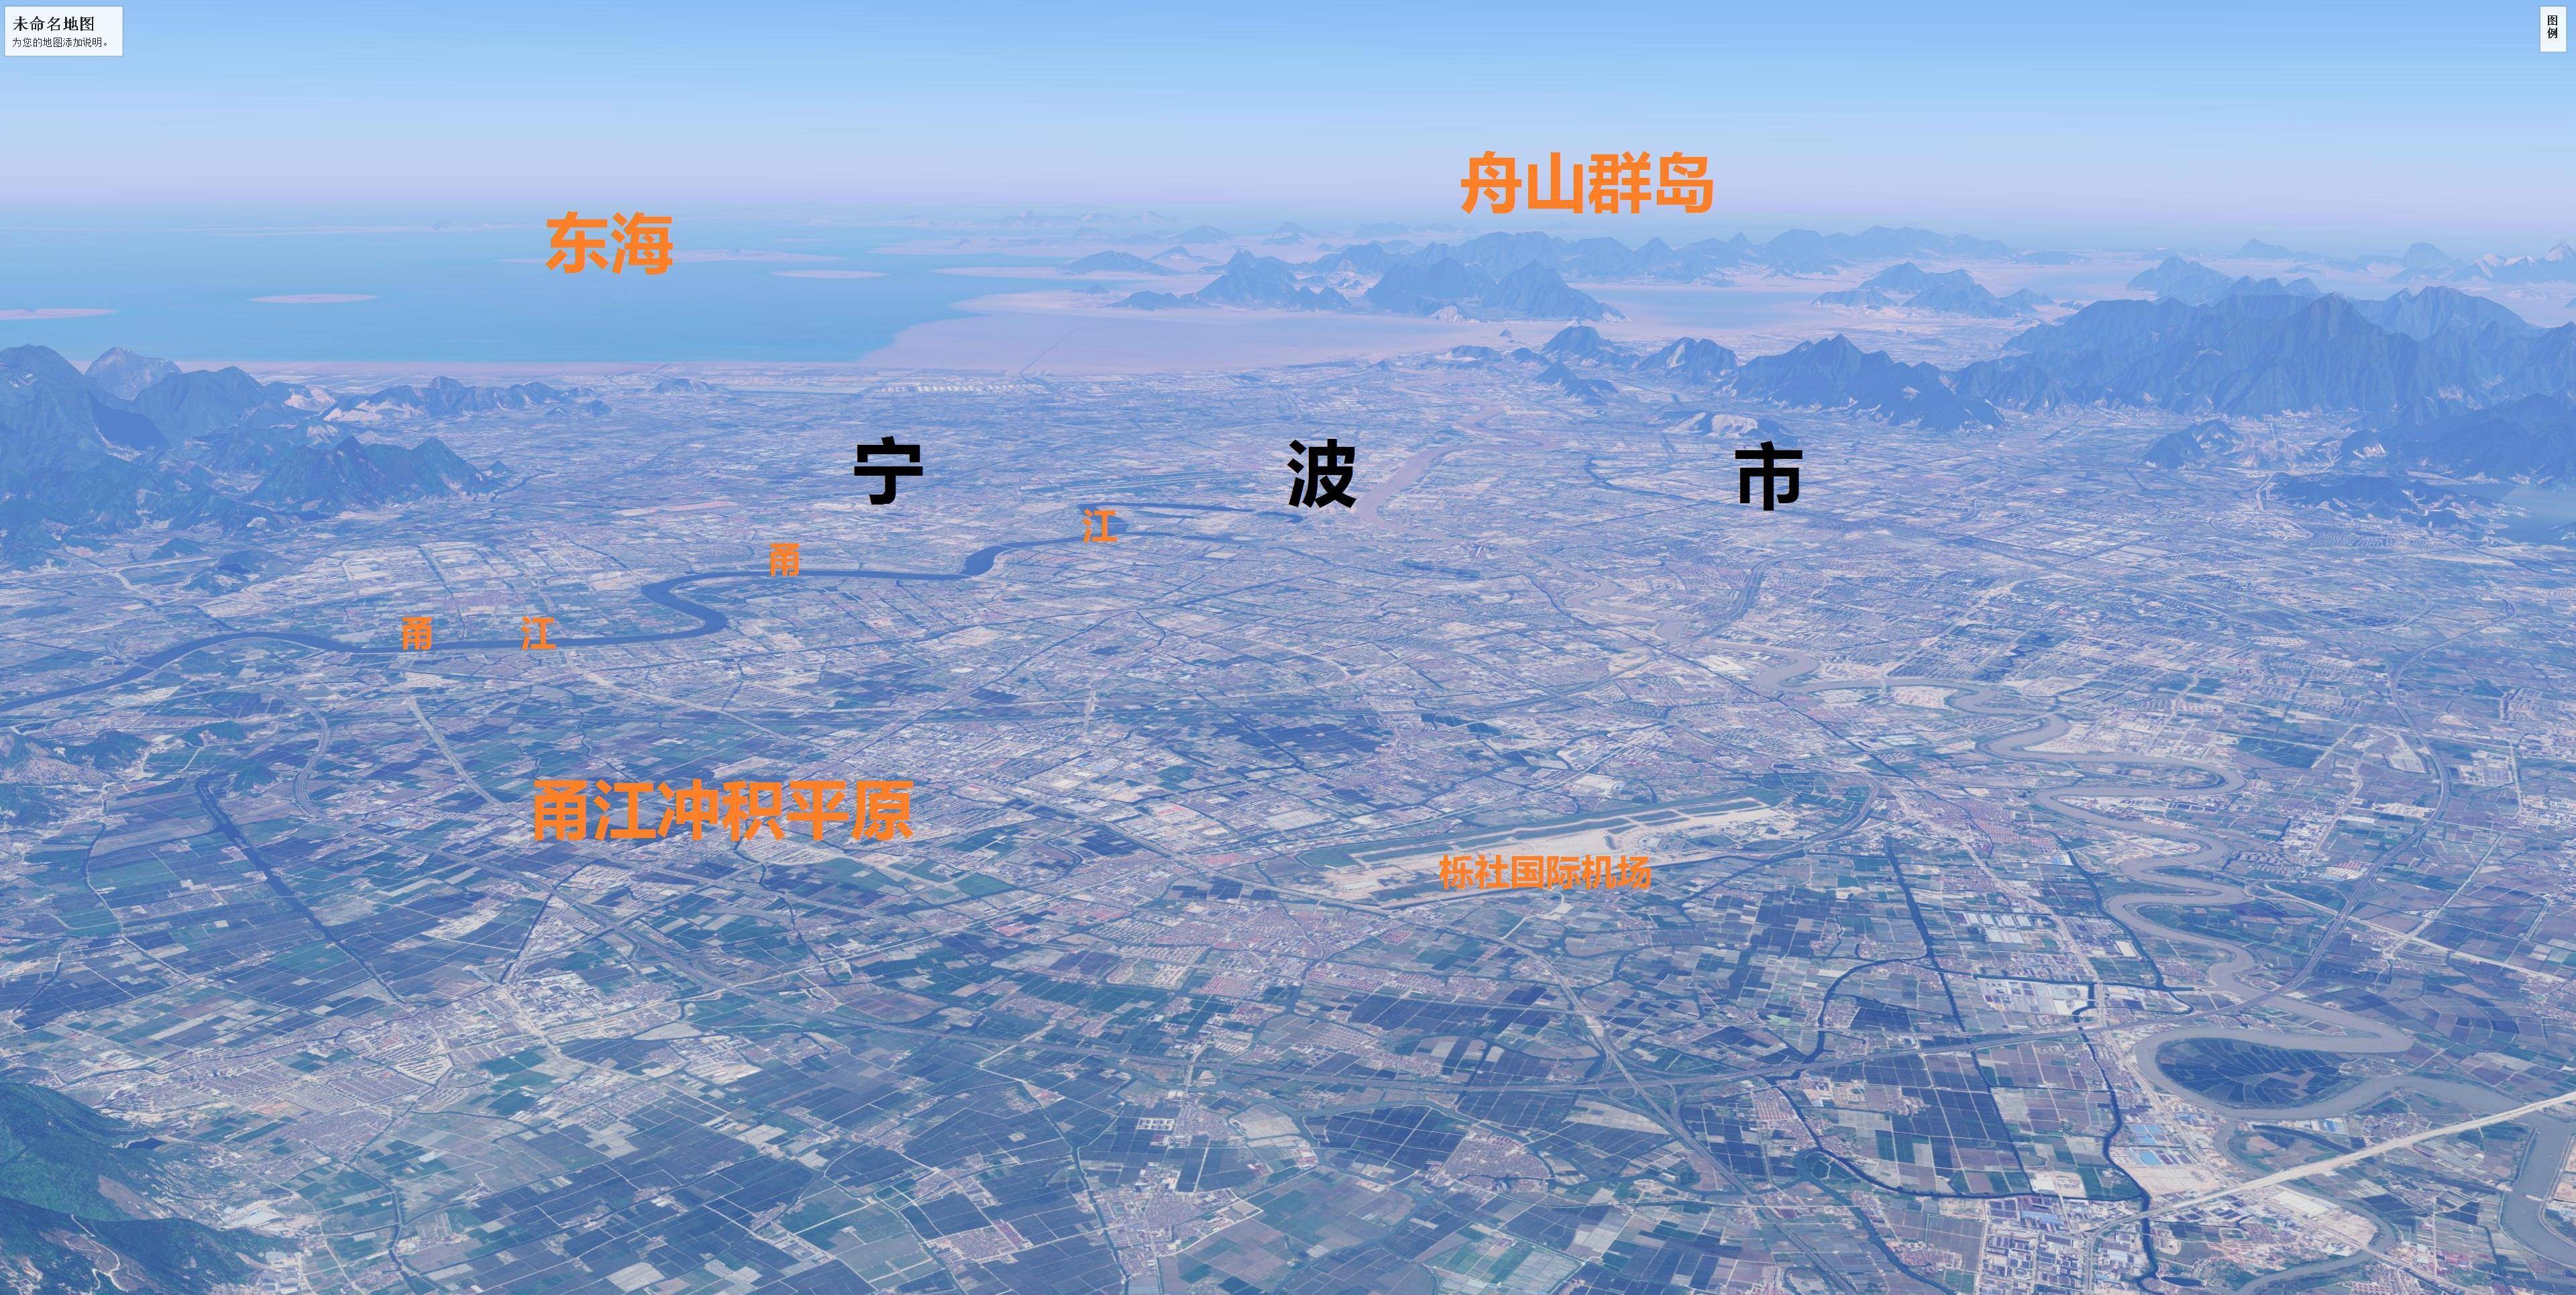 杭州湾沿岸五大城市简易地形图:杭州,嘉兴,绍兴,宁波和舟山